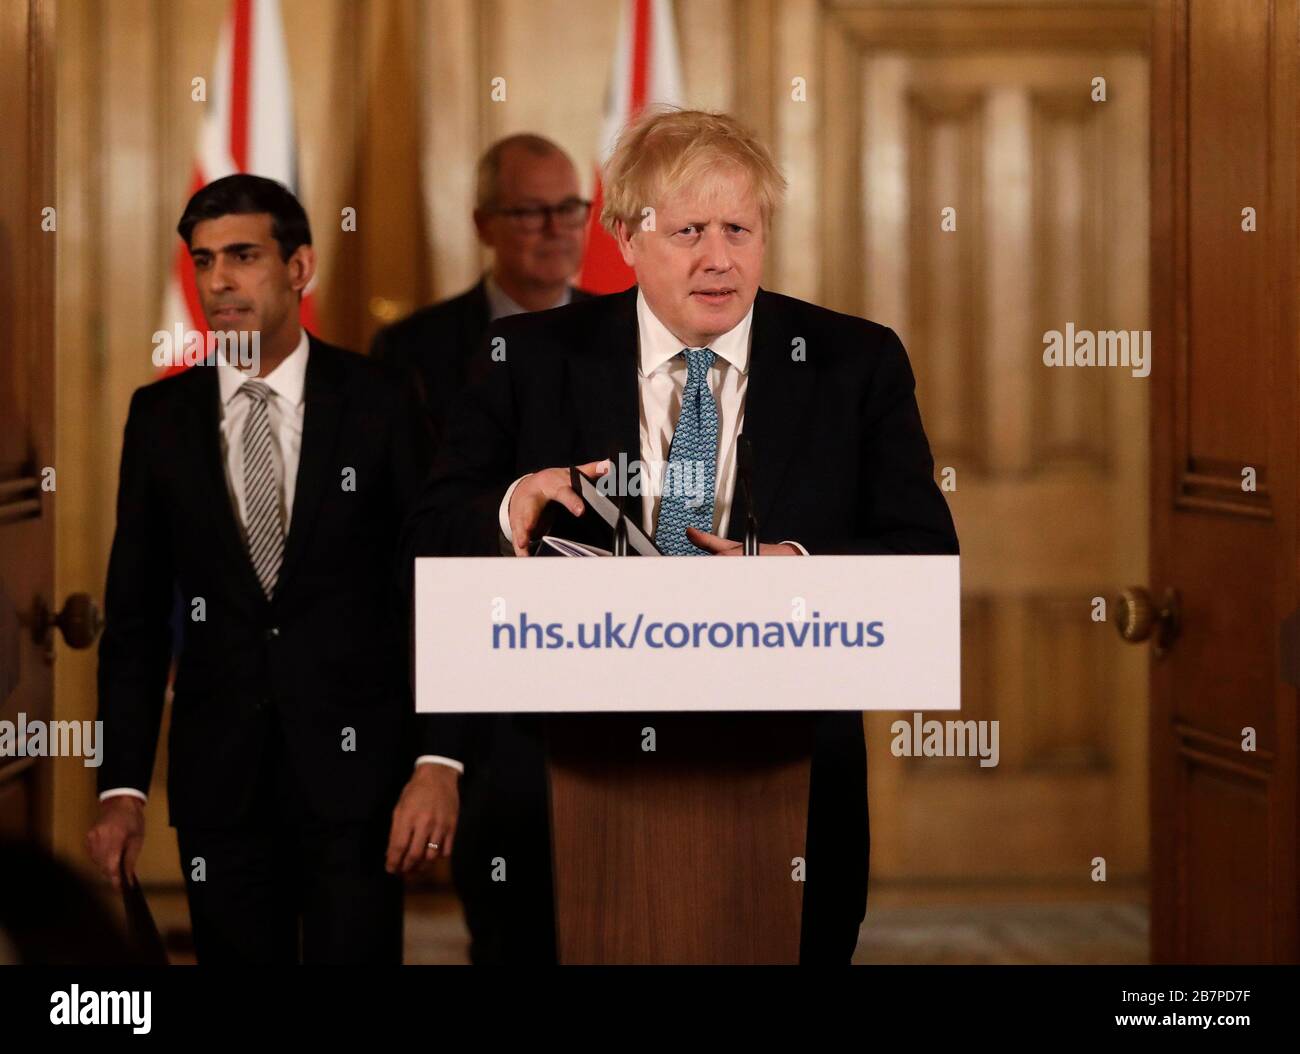 Le chancelier Rishi Sunak et le Premier ministre Boris Johnson arrivent pour un exposé médiatique à Downing Street, Londres, sur Coronavirus (COVID-19). Date de l'image: Mardi 17 mars 2020. Voir l'histoire de PA SANTÉ Coronavirus. Crédit photo devrait lire: Matt Dunham/PA fil Banque D'Images